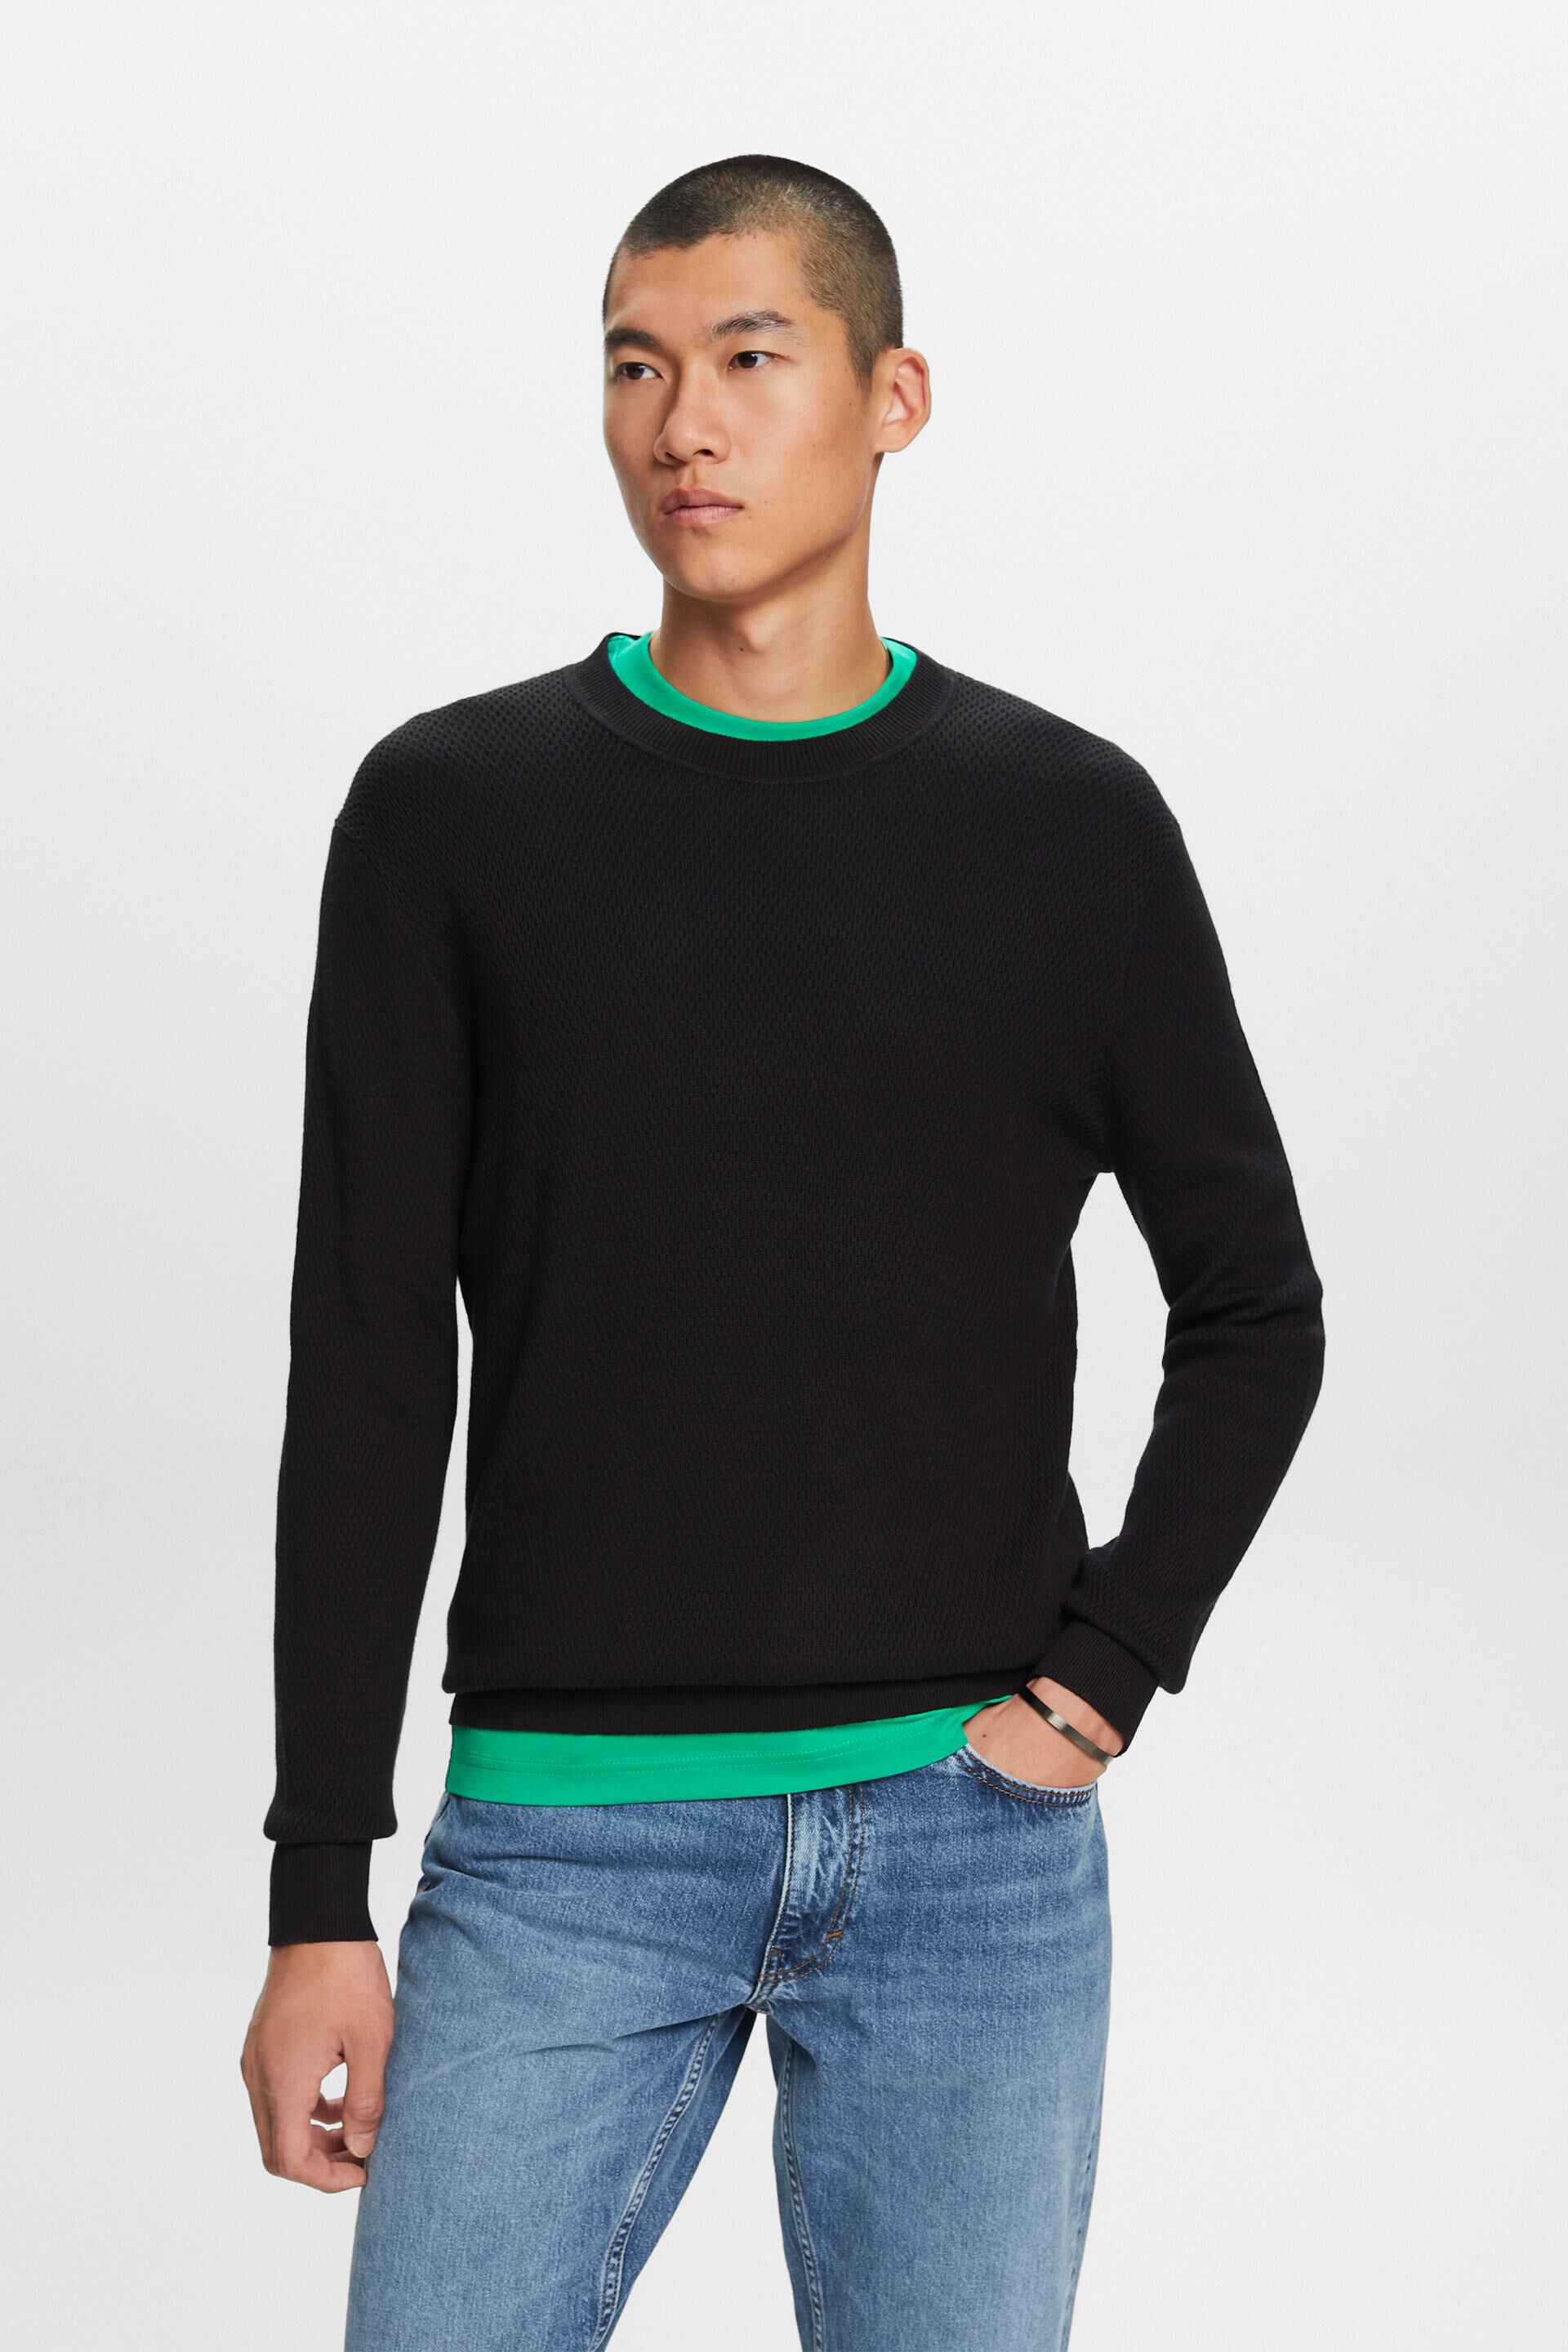 Zwart Duurzame Sweater van Katoen en Lyocell (TENCEL ™) Mix - Comfort en Stijl Gecombineerd